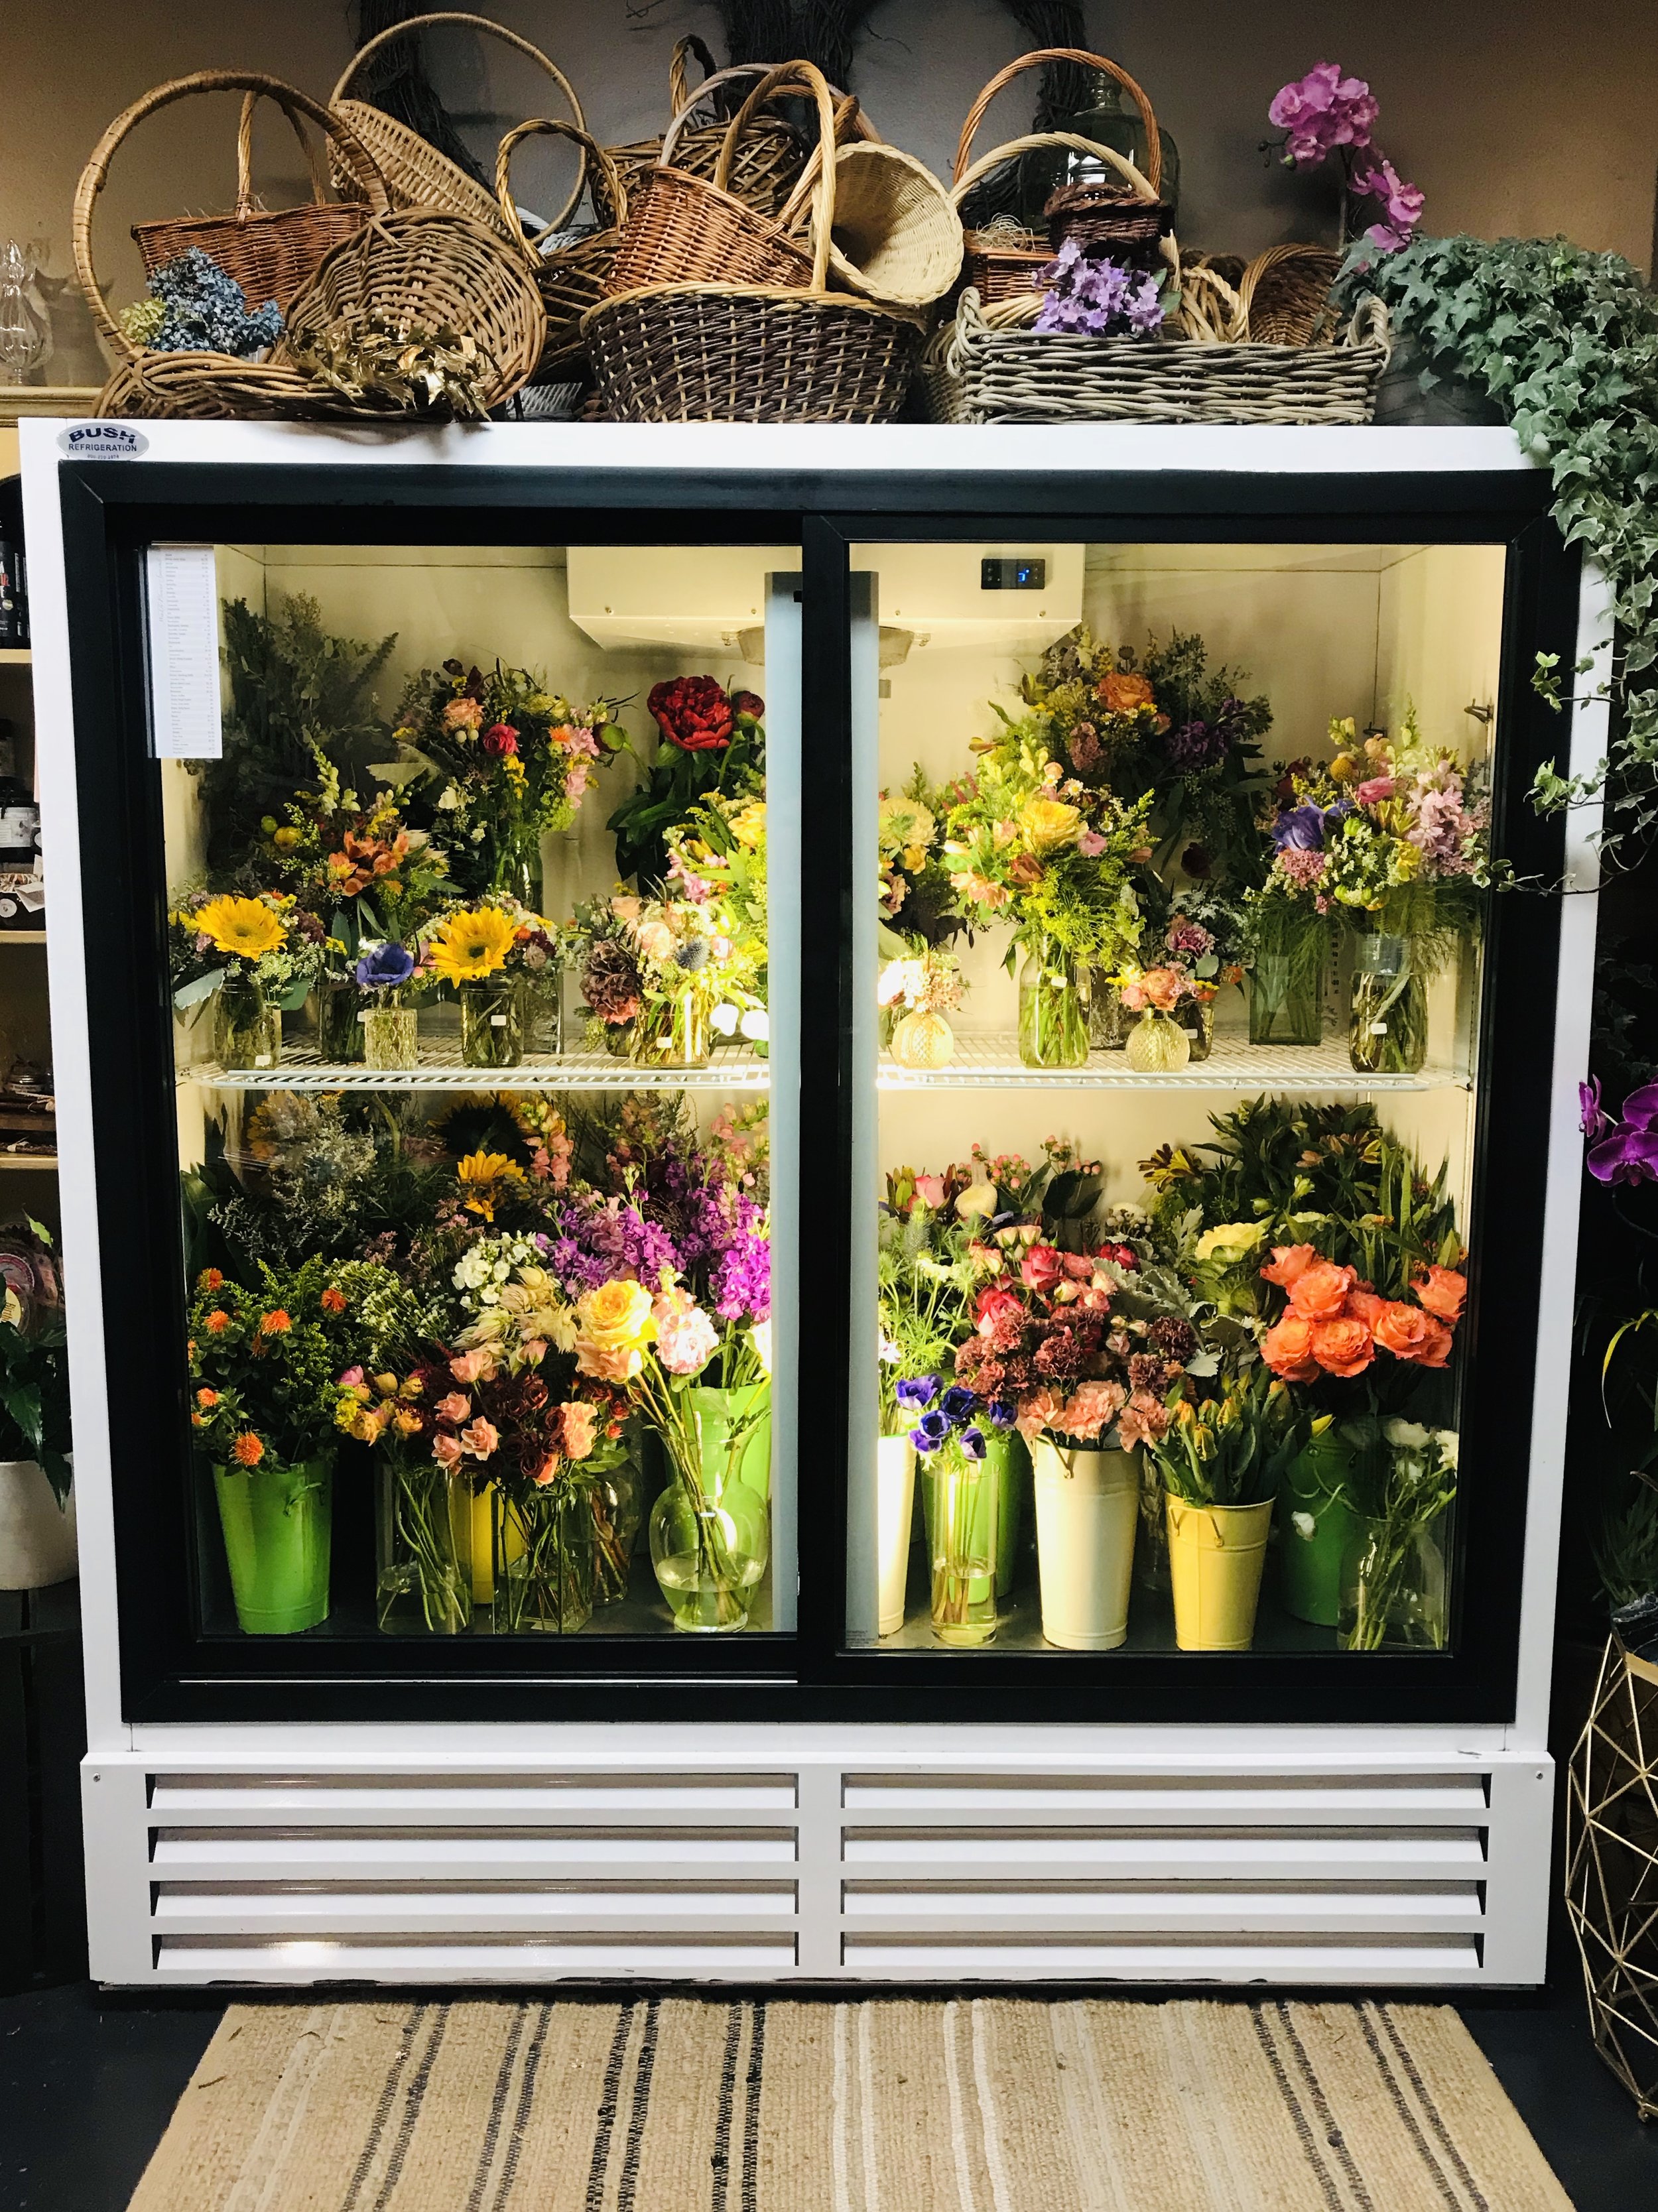 A full flower fridge!